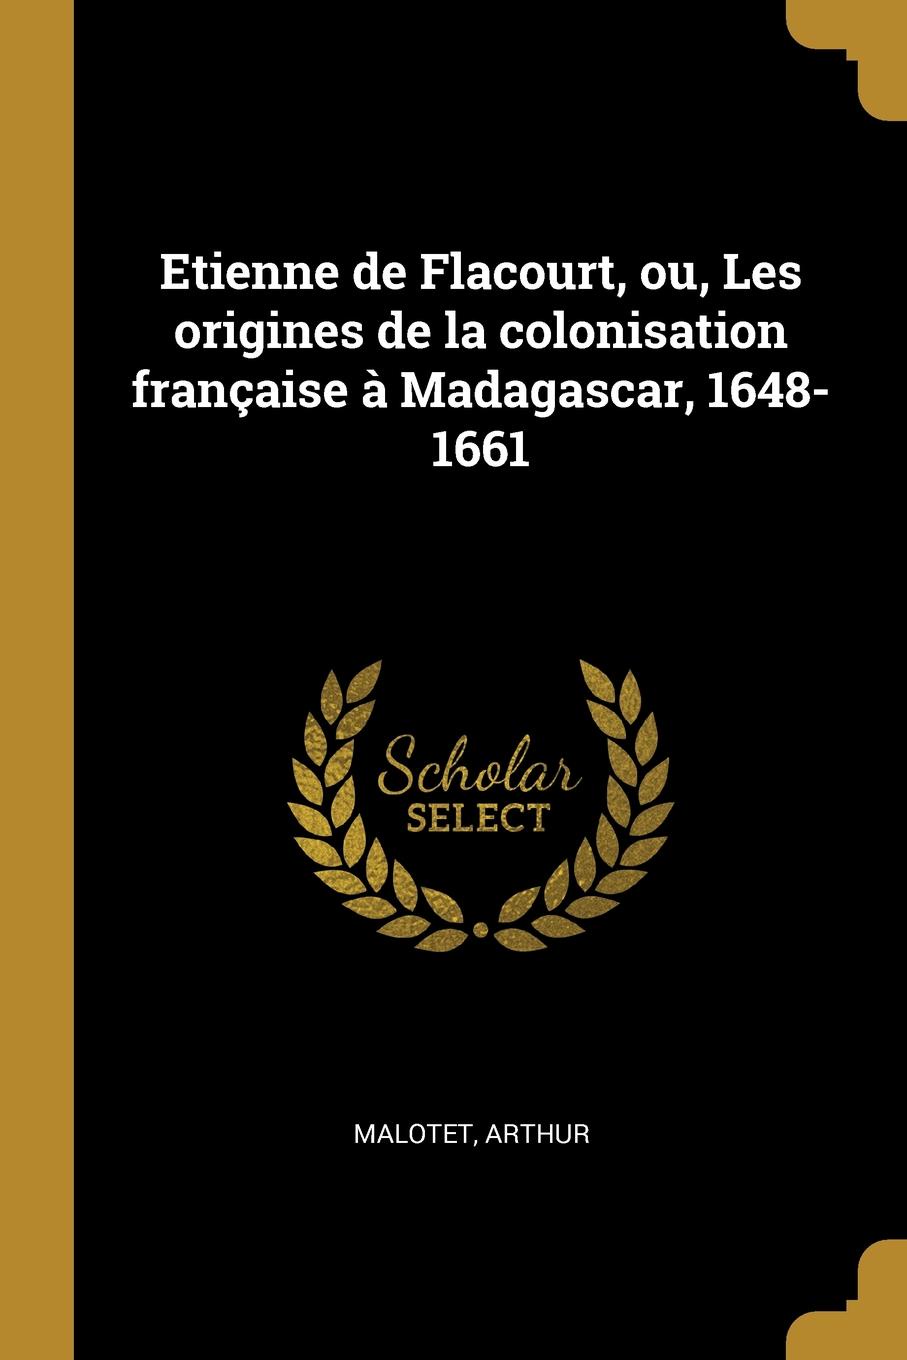 Etienne de Flacourt, ou, Les origines de la colonisation francaise a Madagascar, 1648-1661